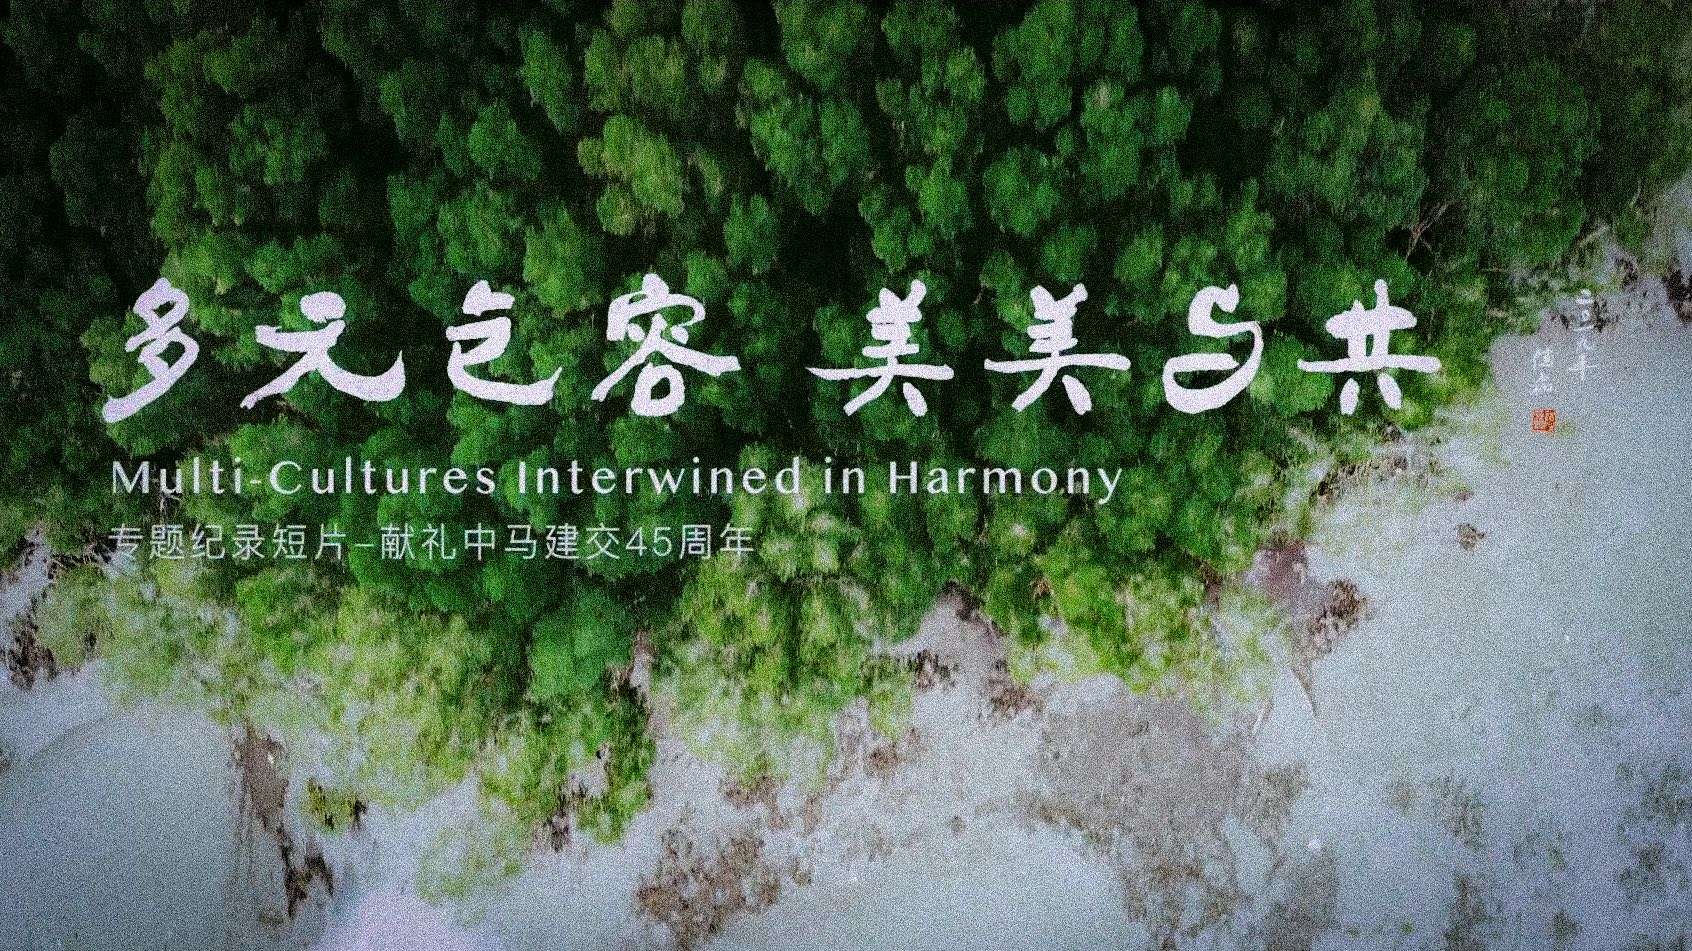 中马建交45周年纪录片《多元包容 美美与共》北京大学马来西亚校友会出品